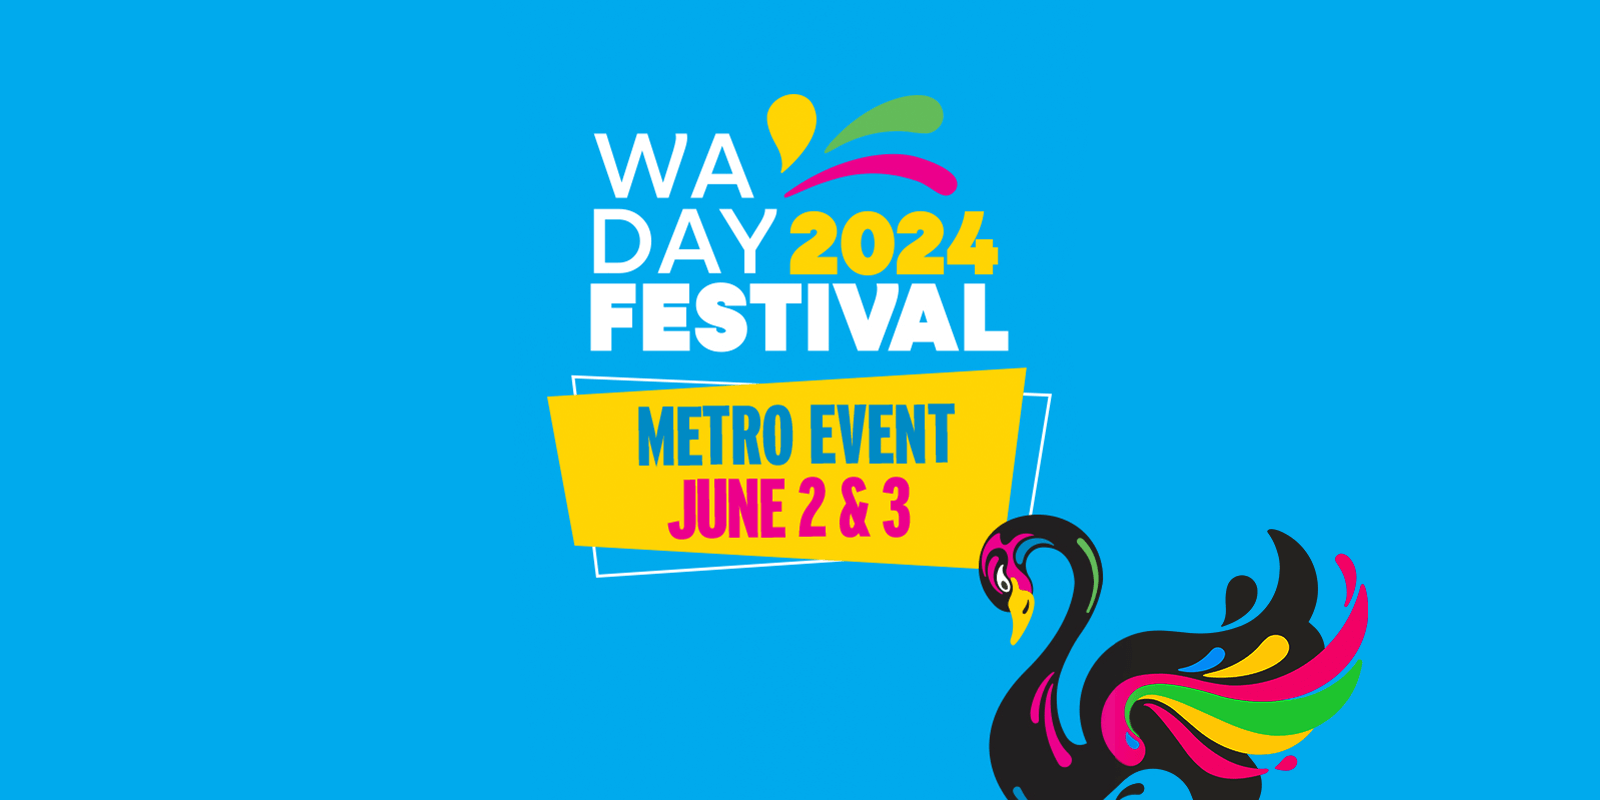 WA Day Festival 2024 - Metro Event June 2 & 3